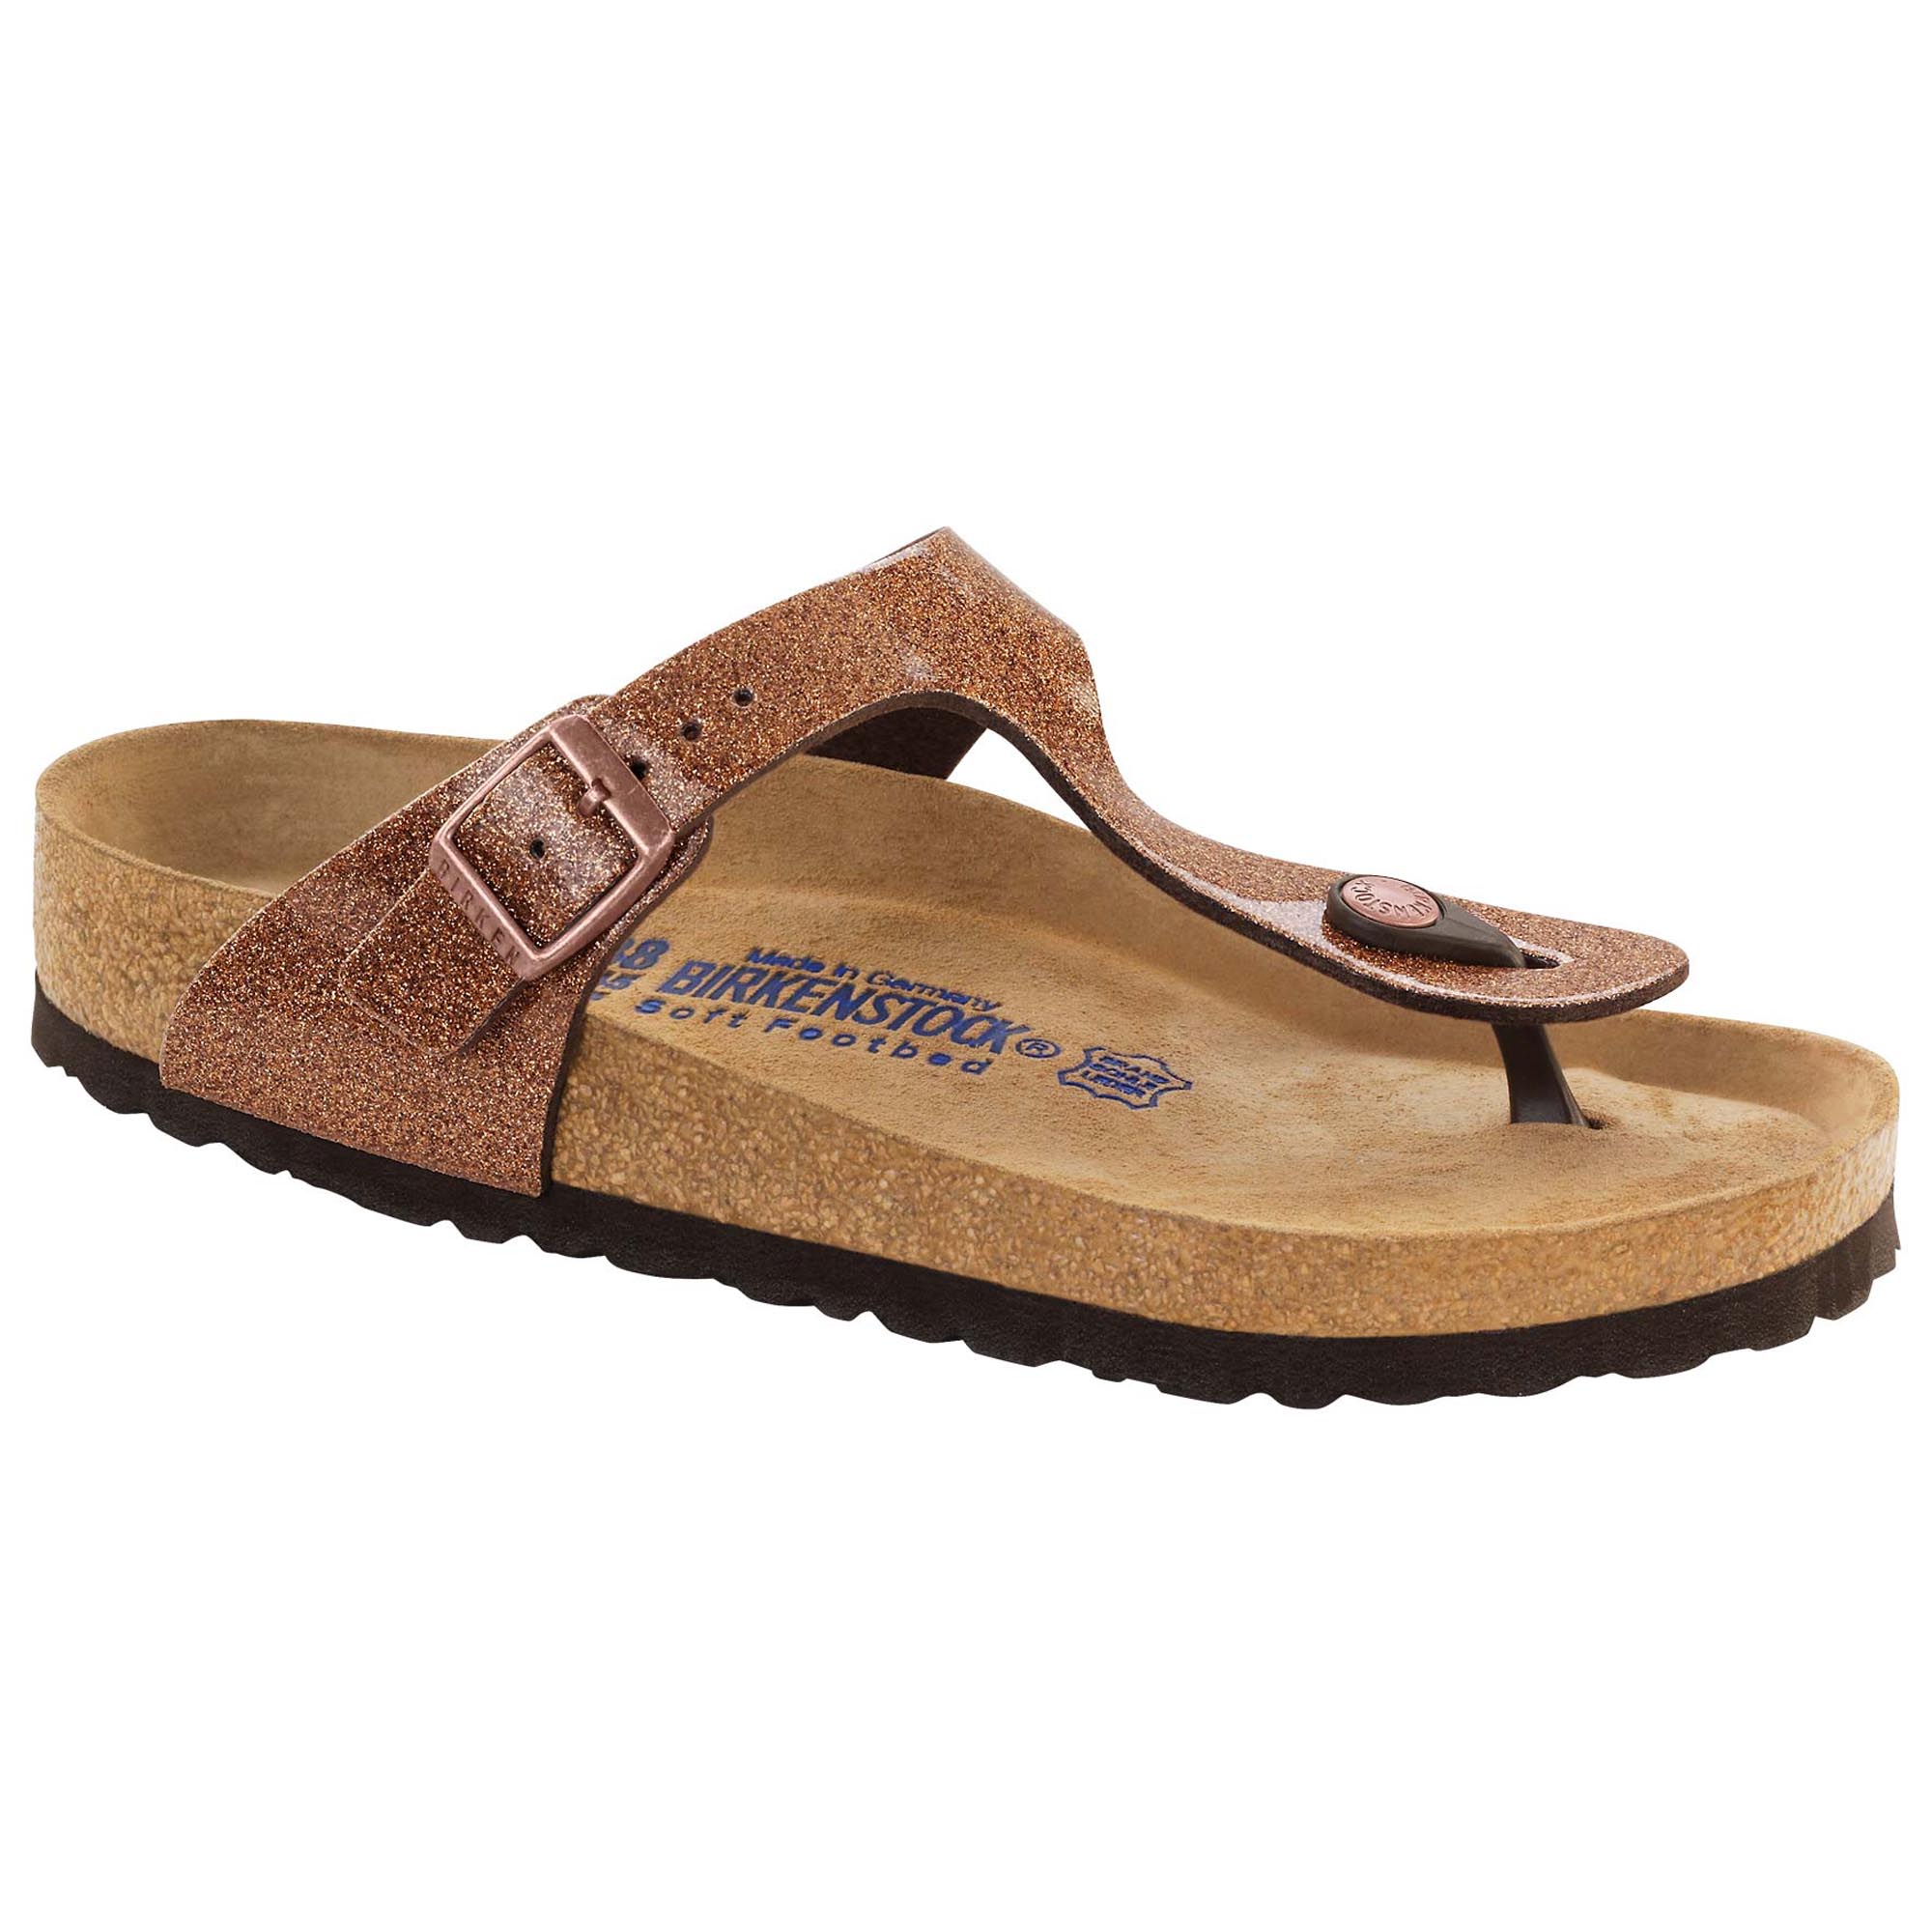 bata sandals online shopping